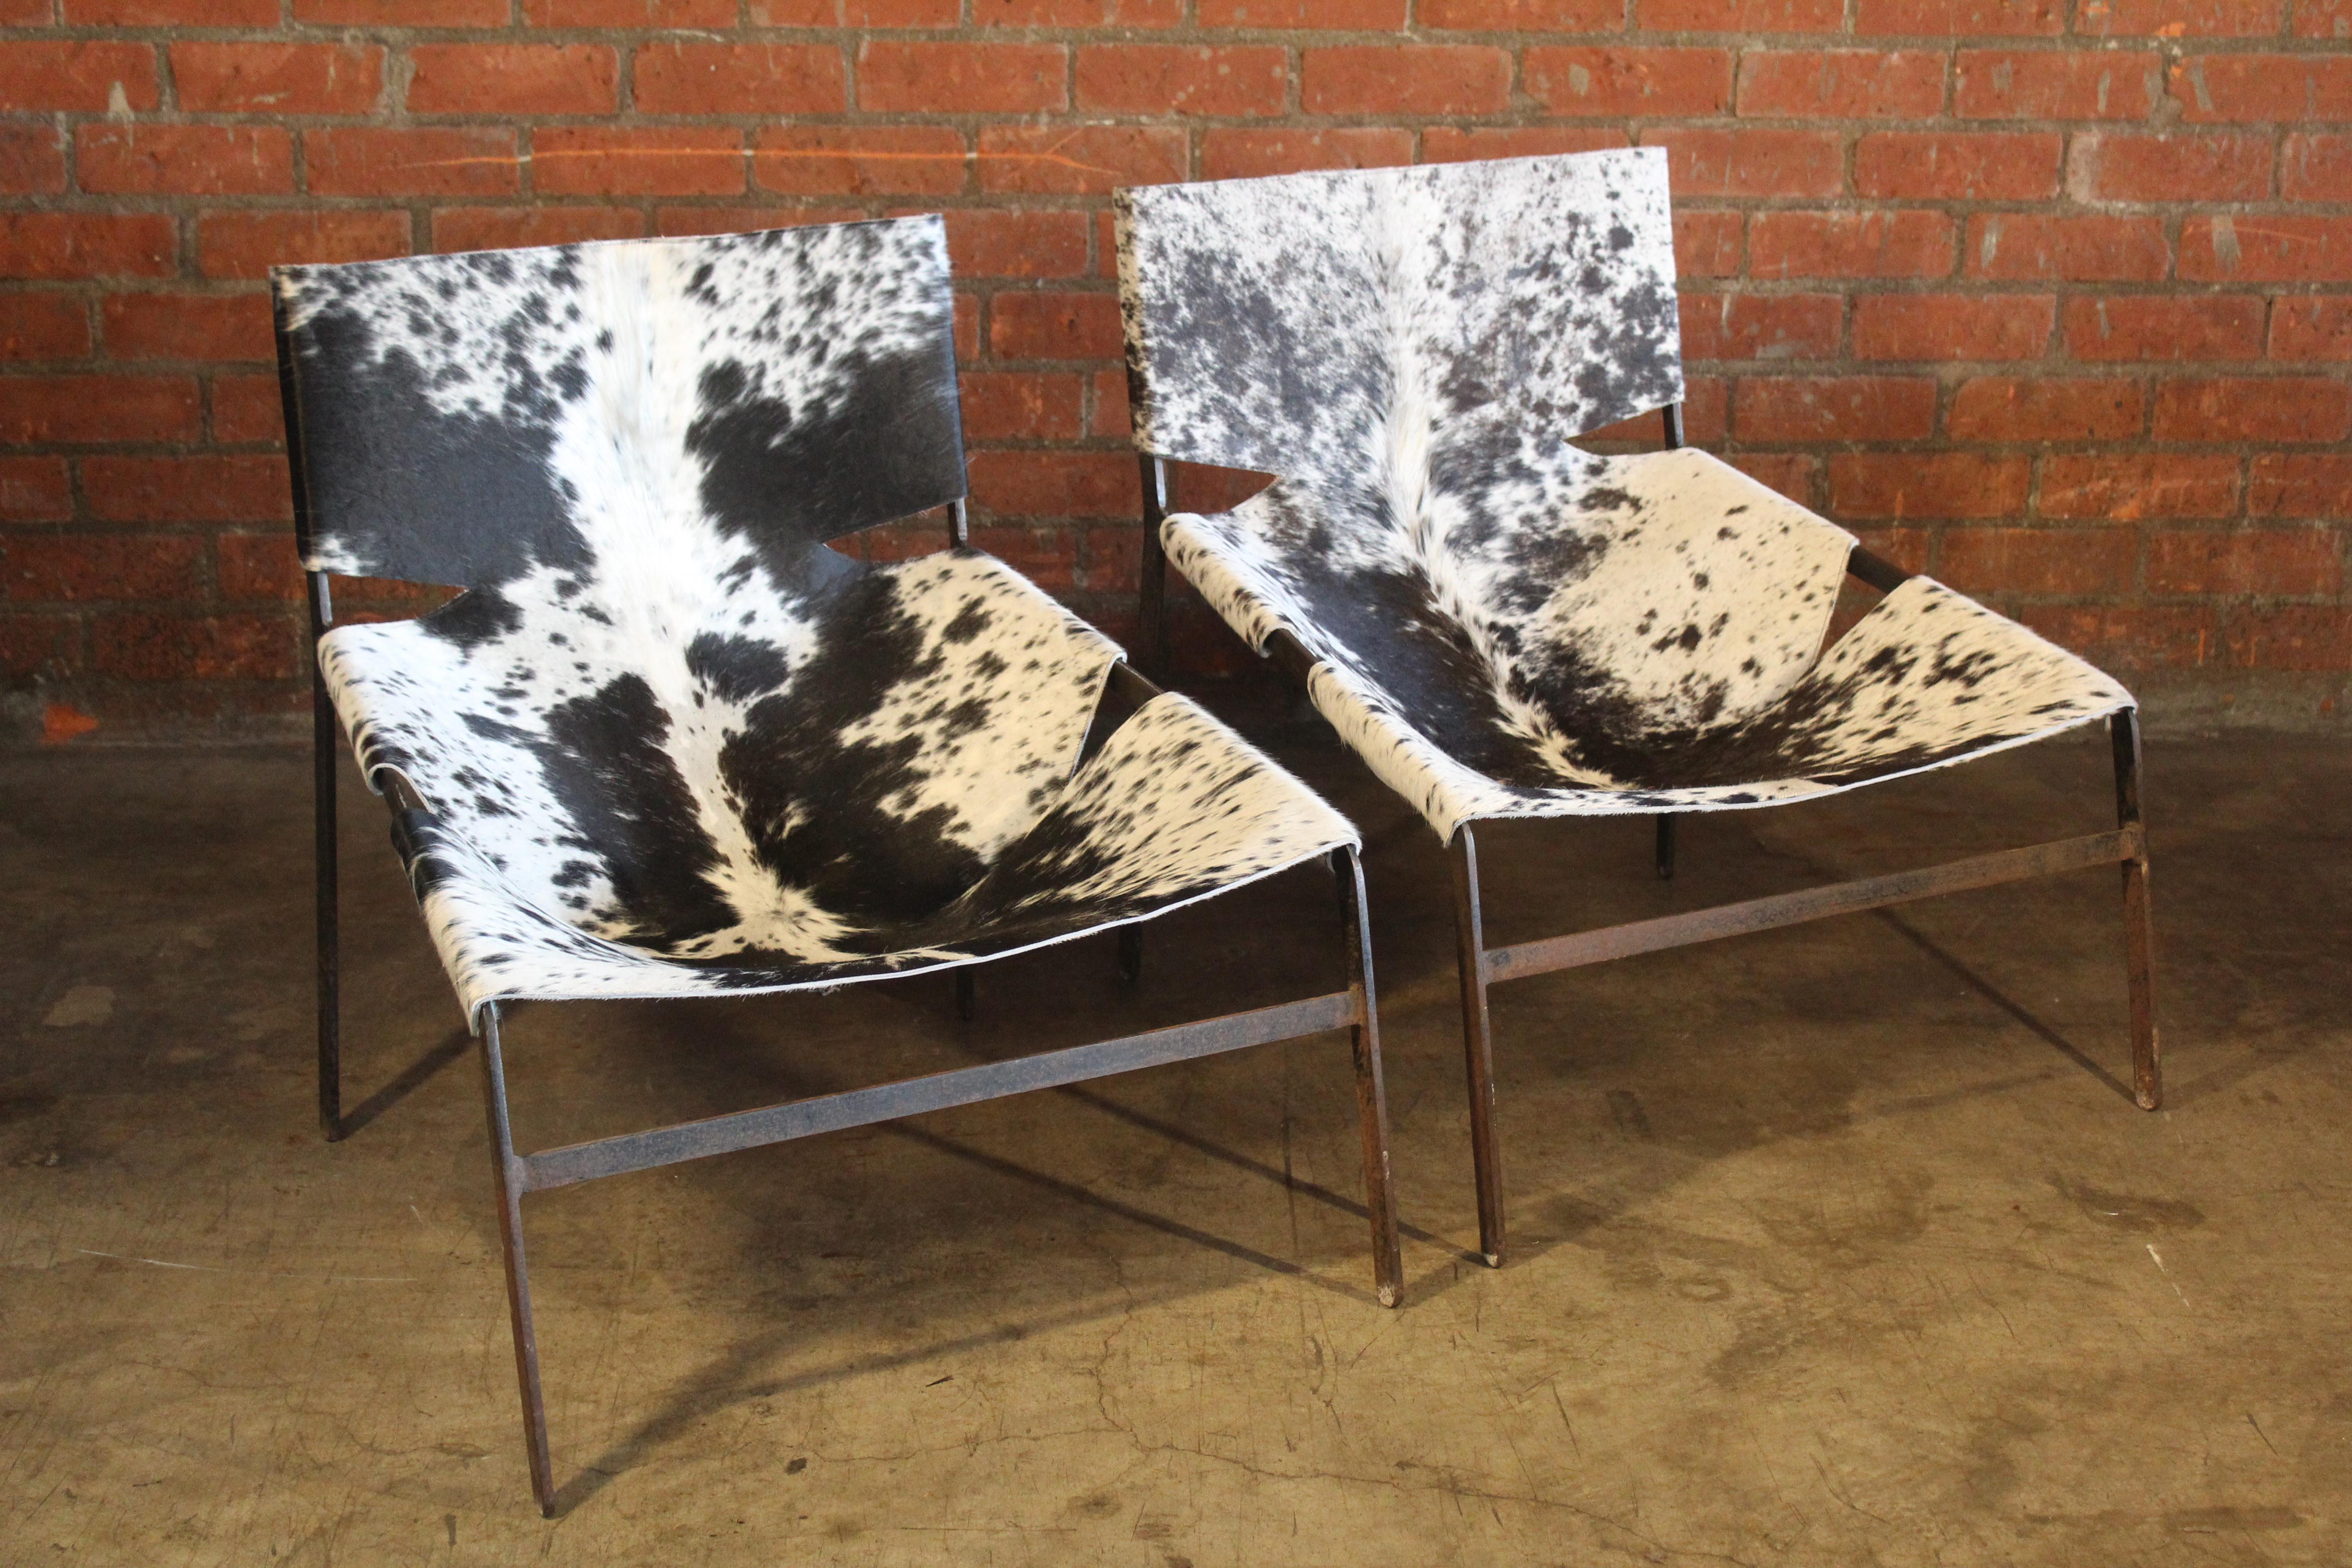 Ein Paar eiserne Sessel mit neuen Rindslederbezügen. Die Eisenrahmen weisen Patina auf. Unbekannter Designer, der Pierre Paulin zugeschrieben wird. Wahrscheinlich aus den Niederlanden, 1960er Jahre.